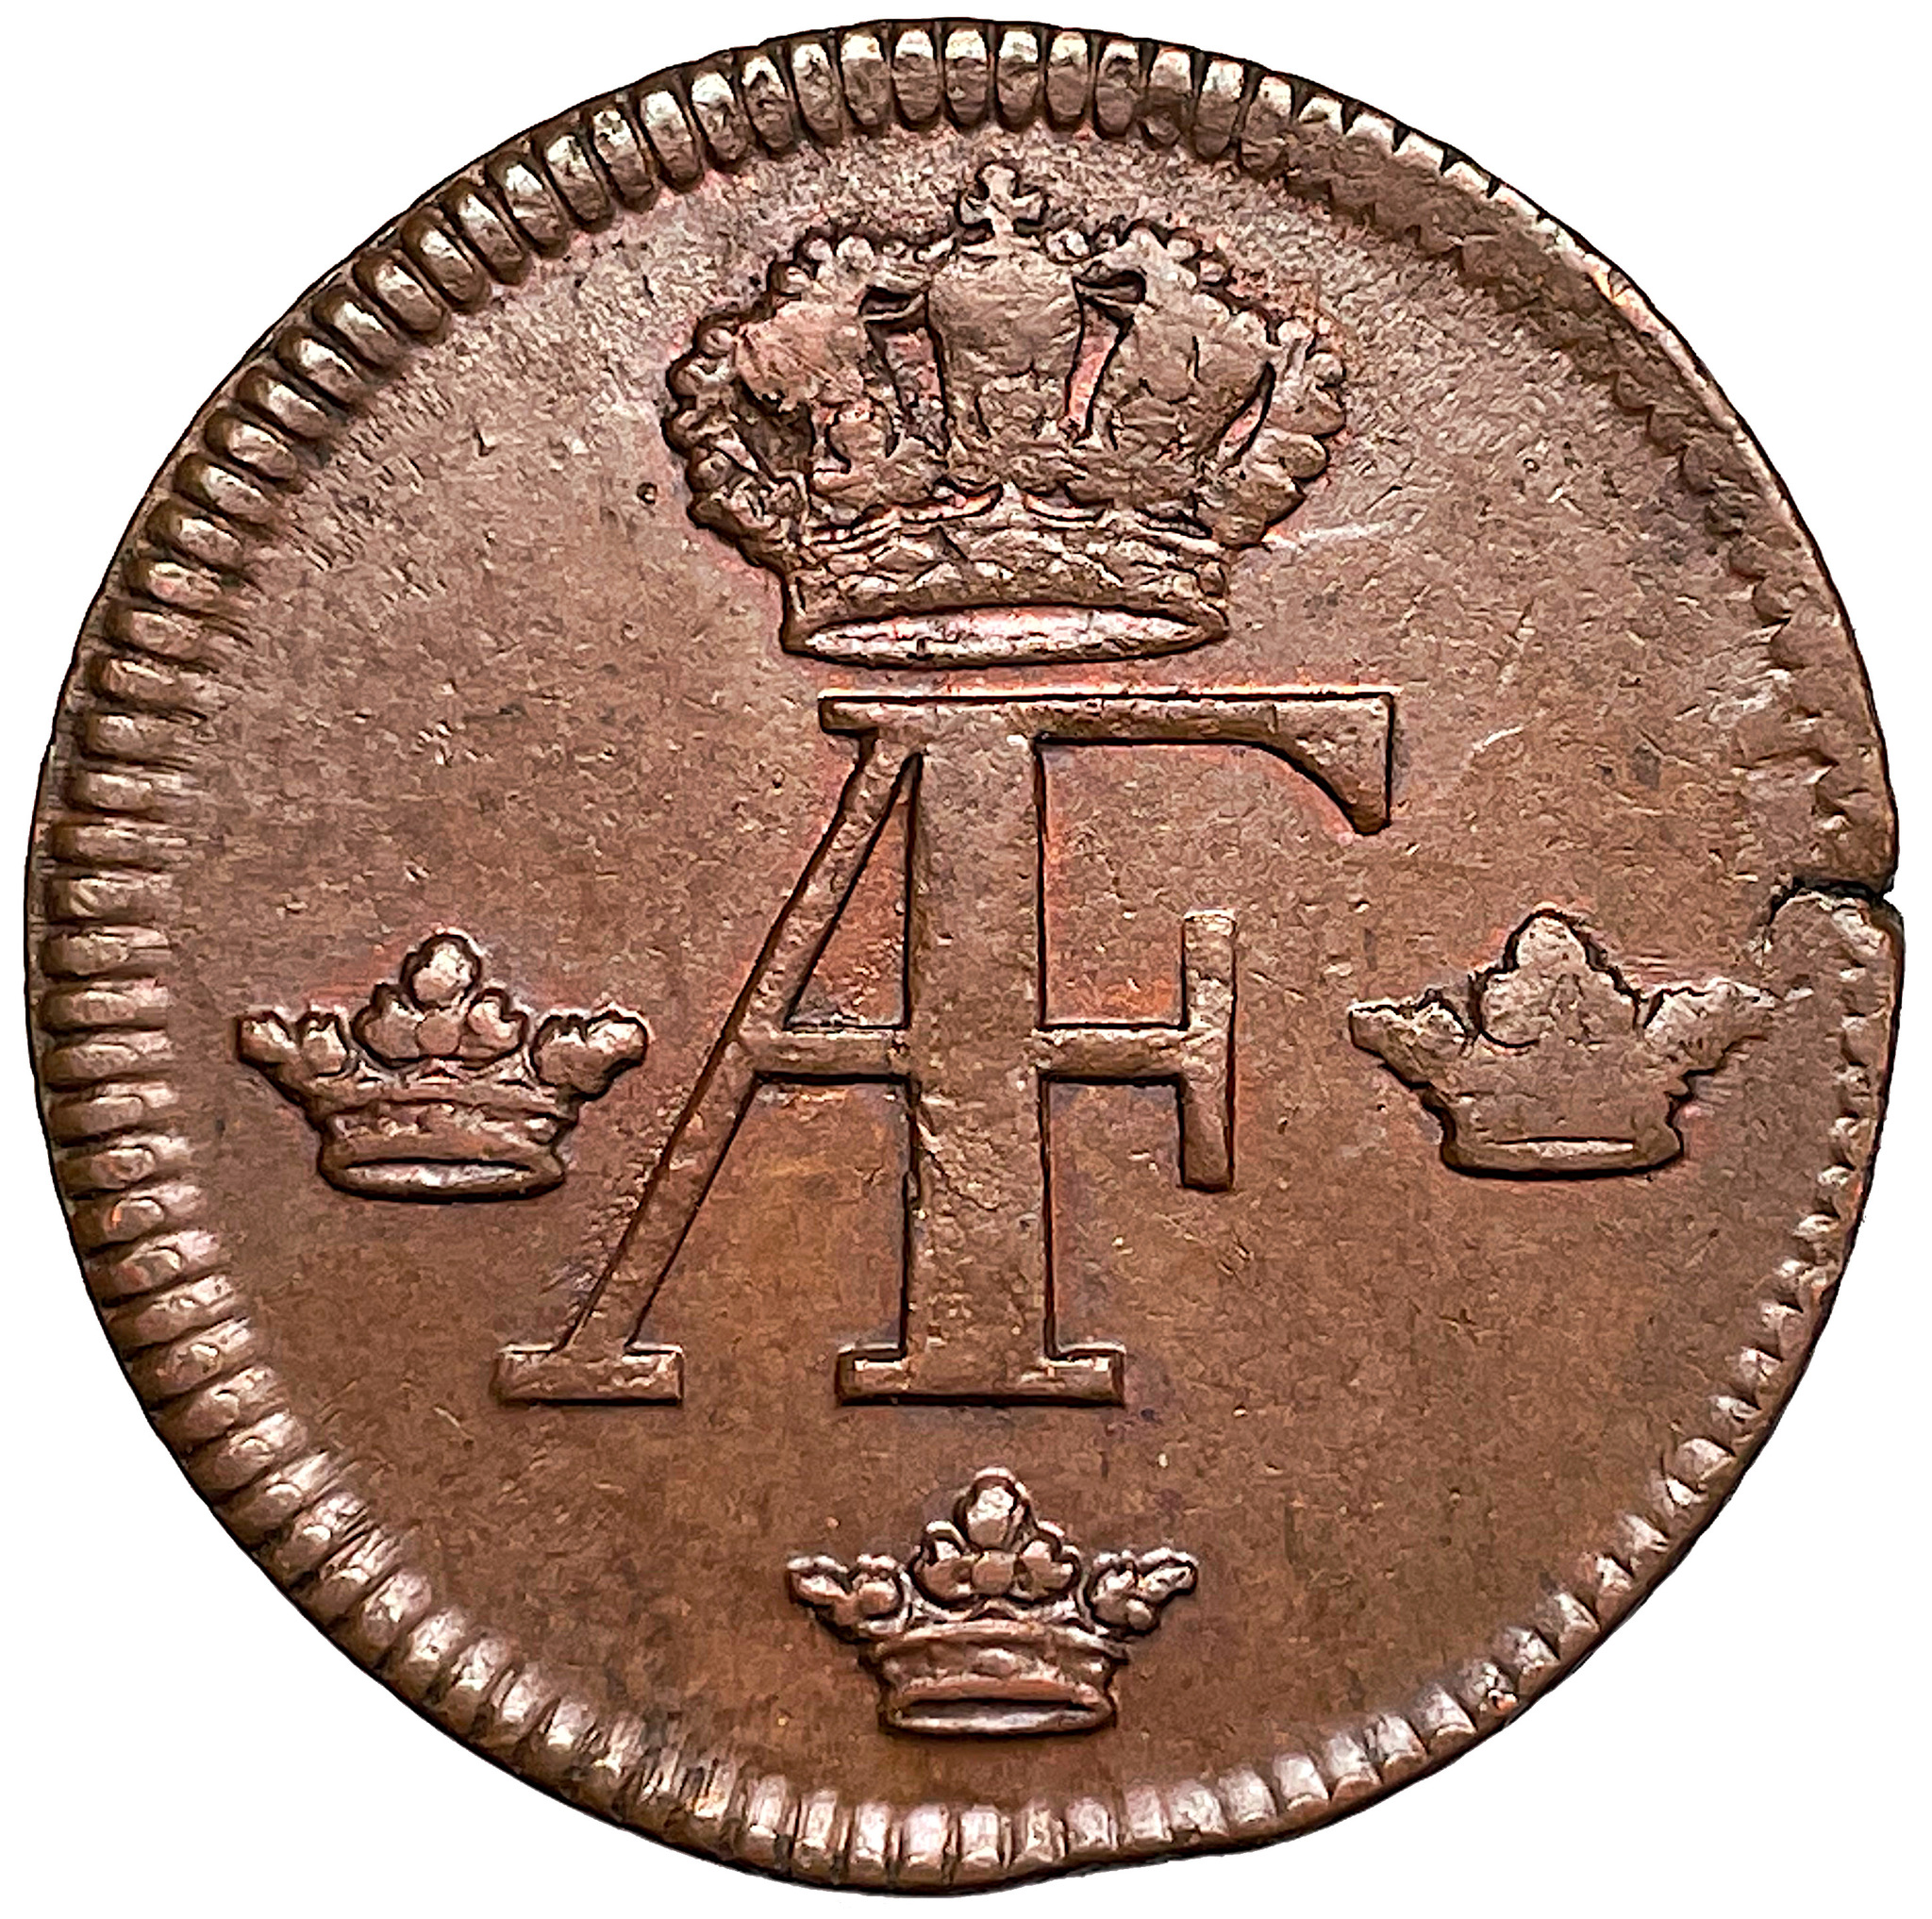 Adolf Fredrik - 1 Öre SM 1758 - Mycket vackert exemplar